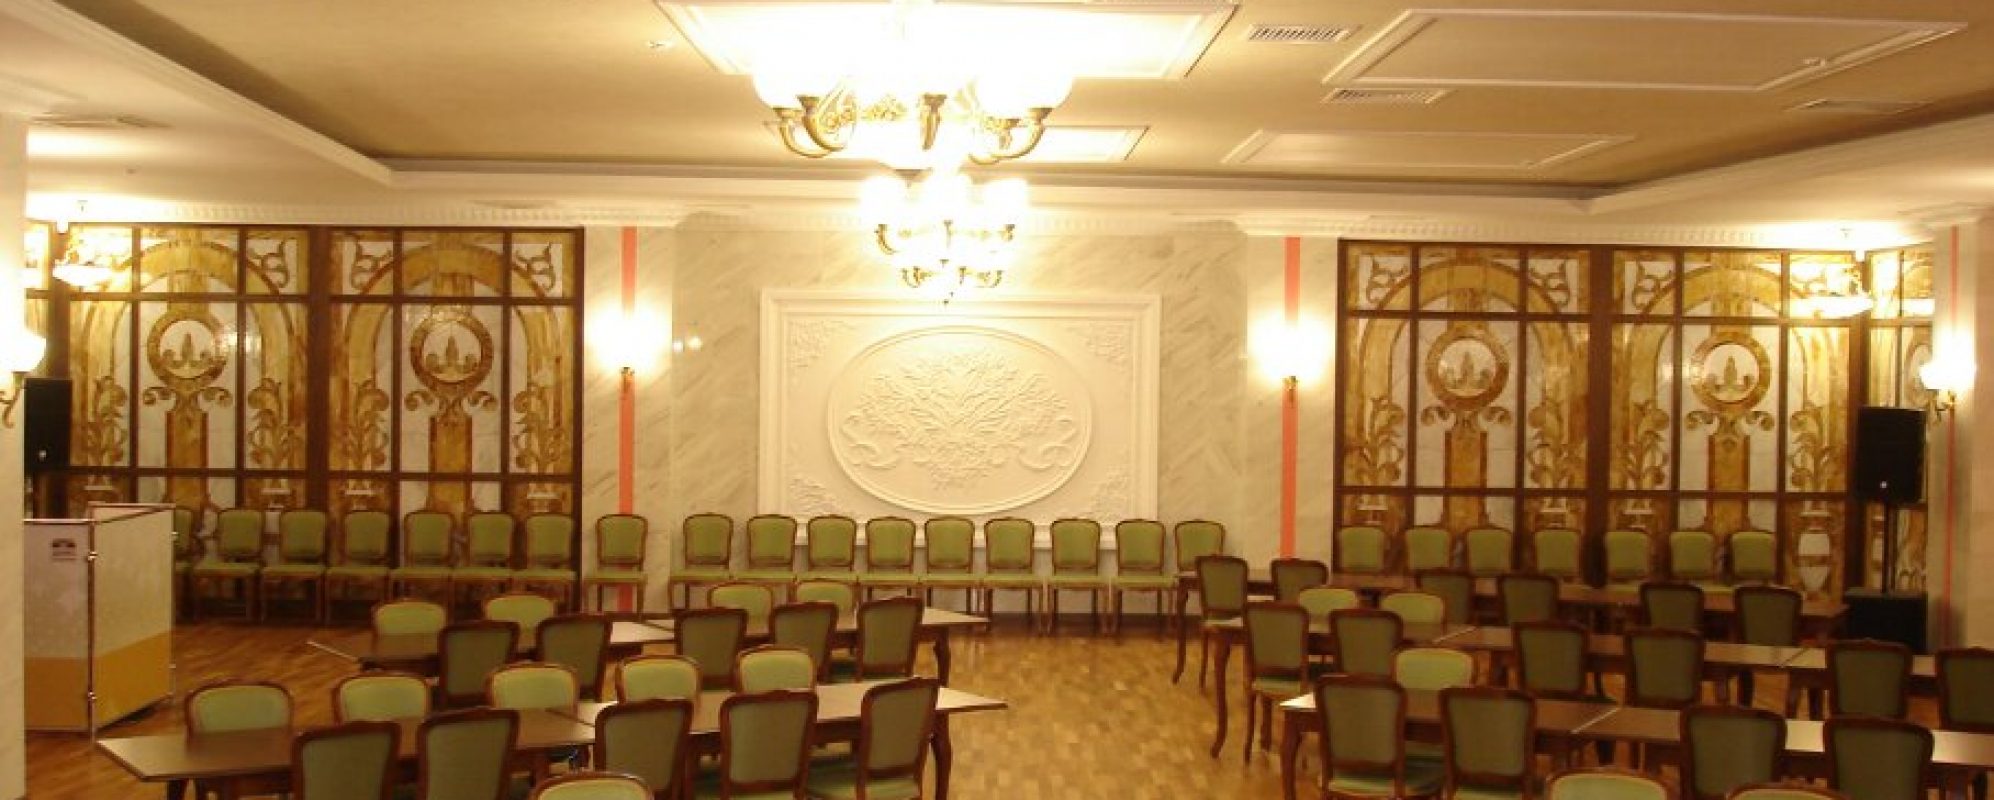 Фотографии концертного зала Малый зал ГДК